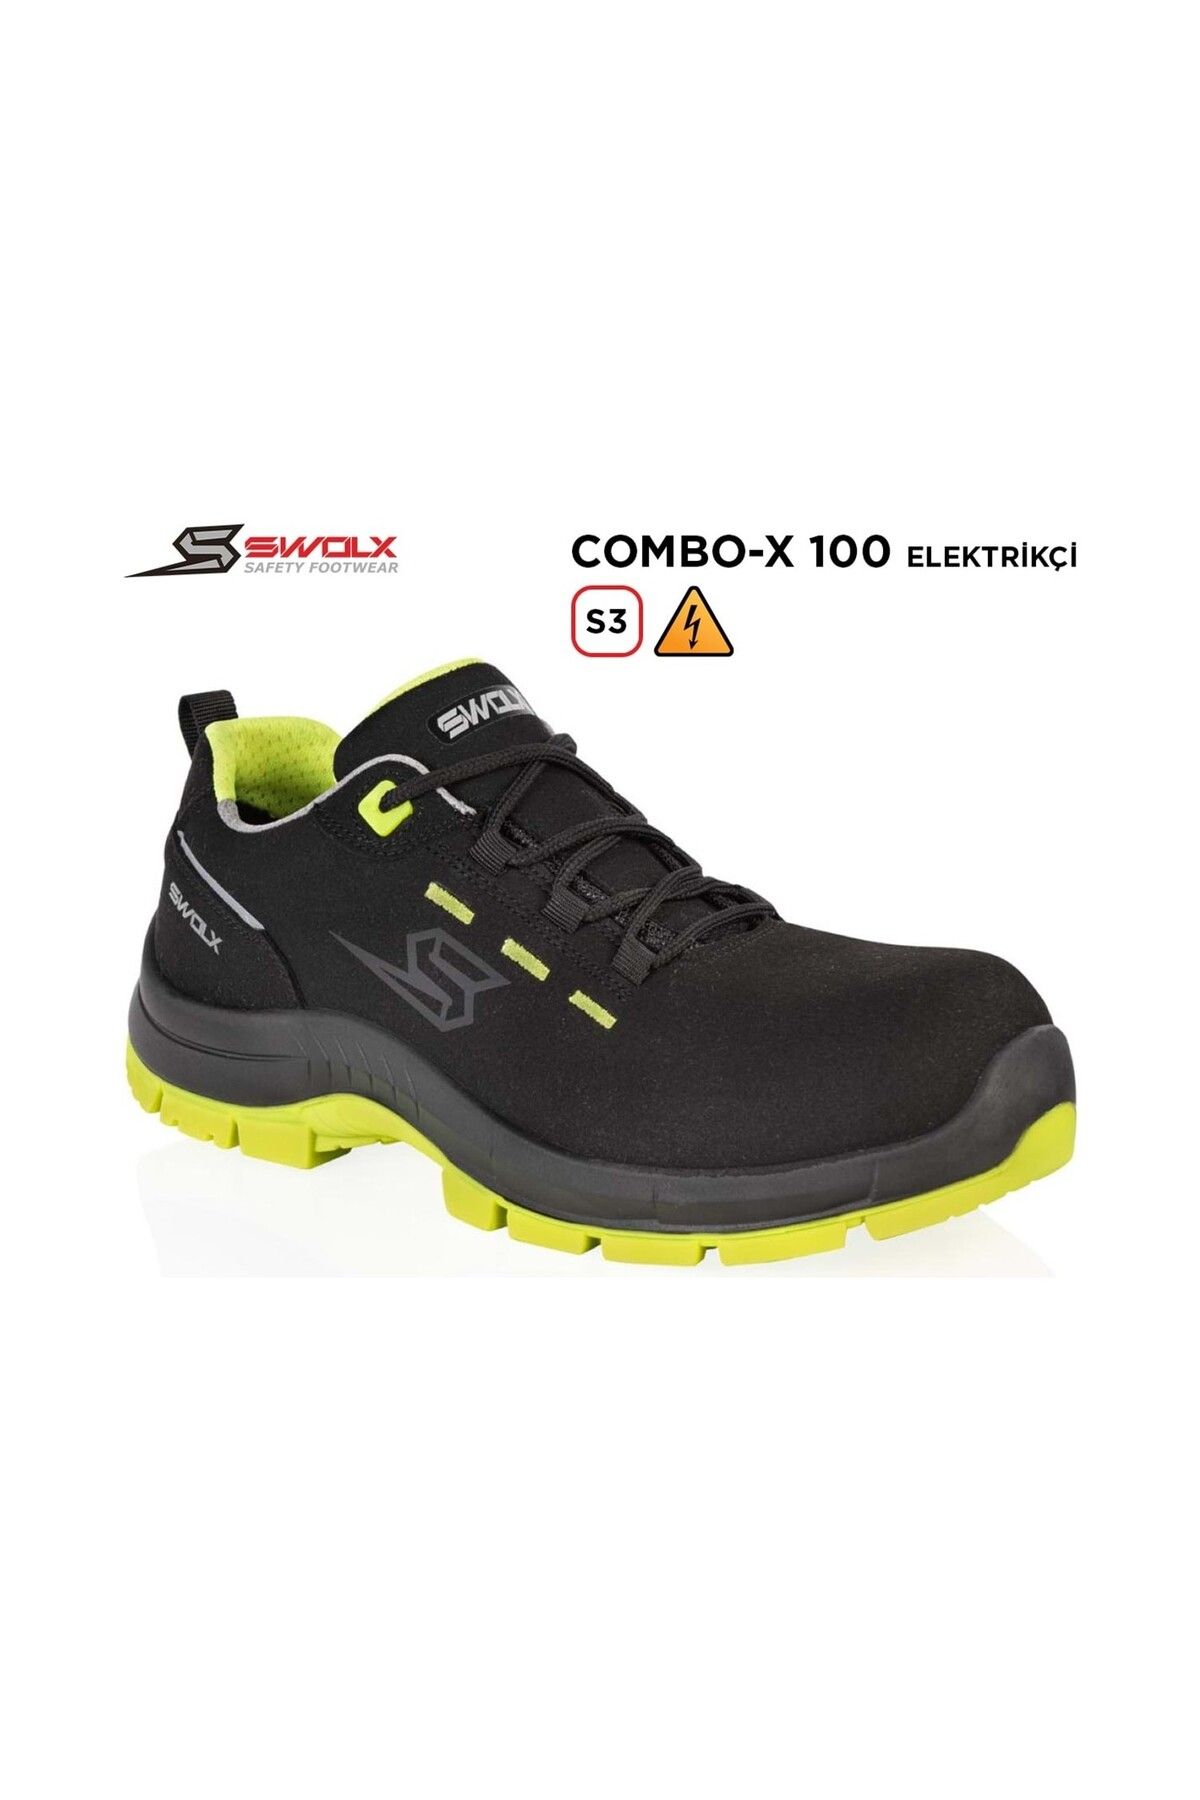 Swolx Iş Ayakkabısı - Combo-x 100 S3 Elektrikçi